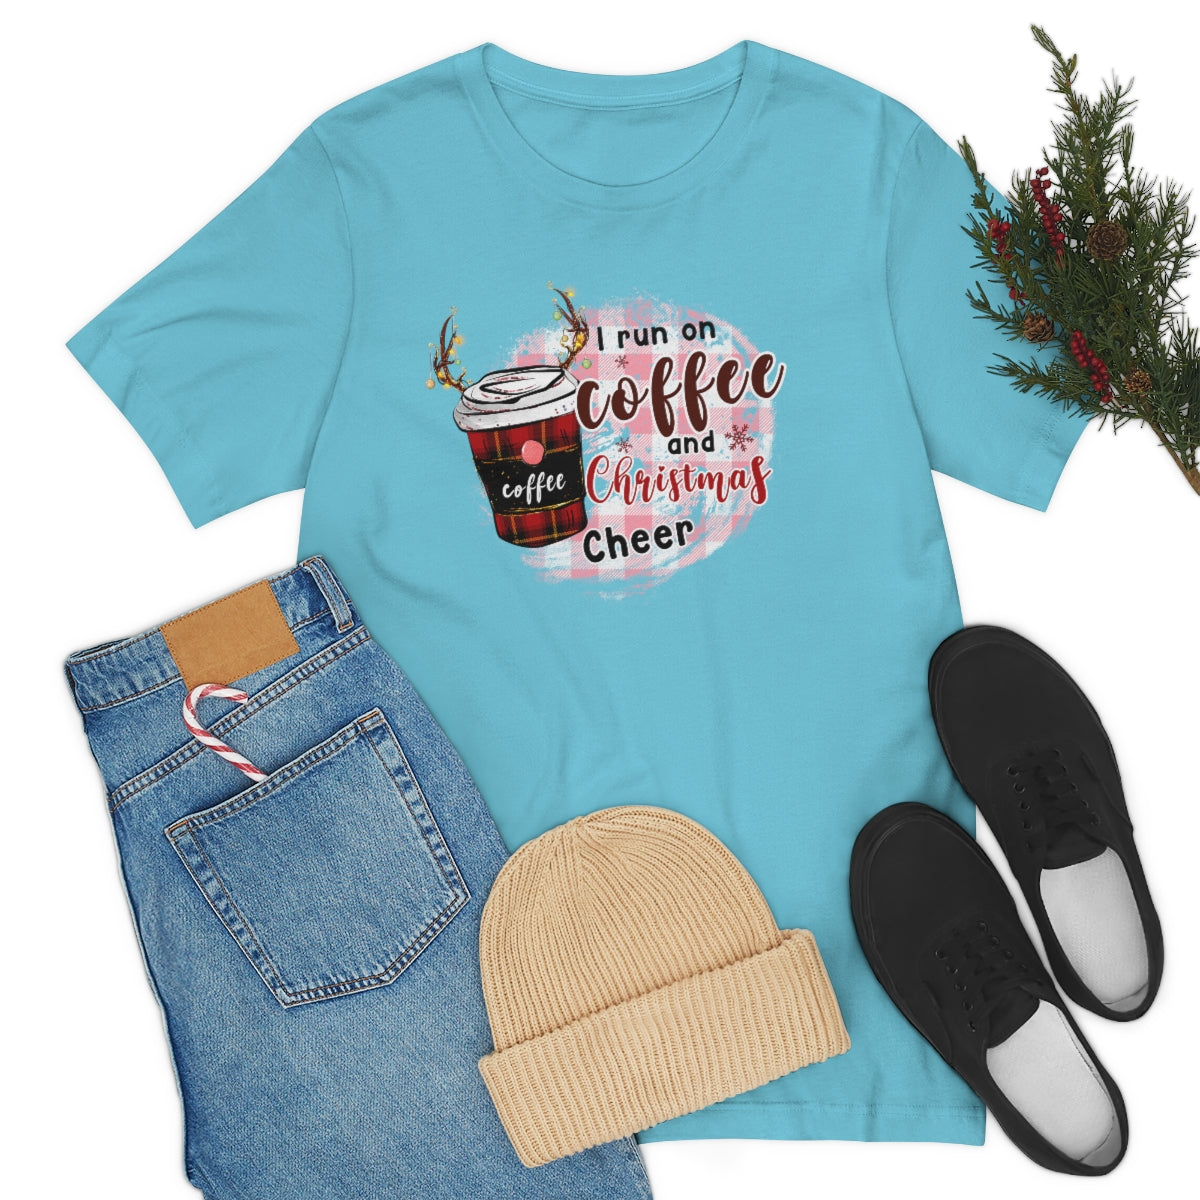 I run on coffee and Christmas cheer shirt